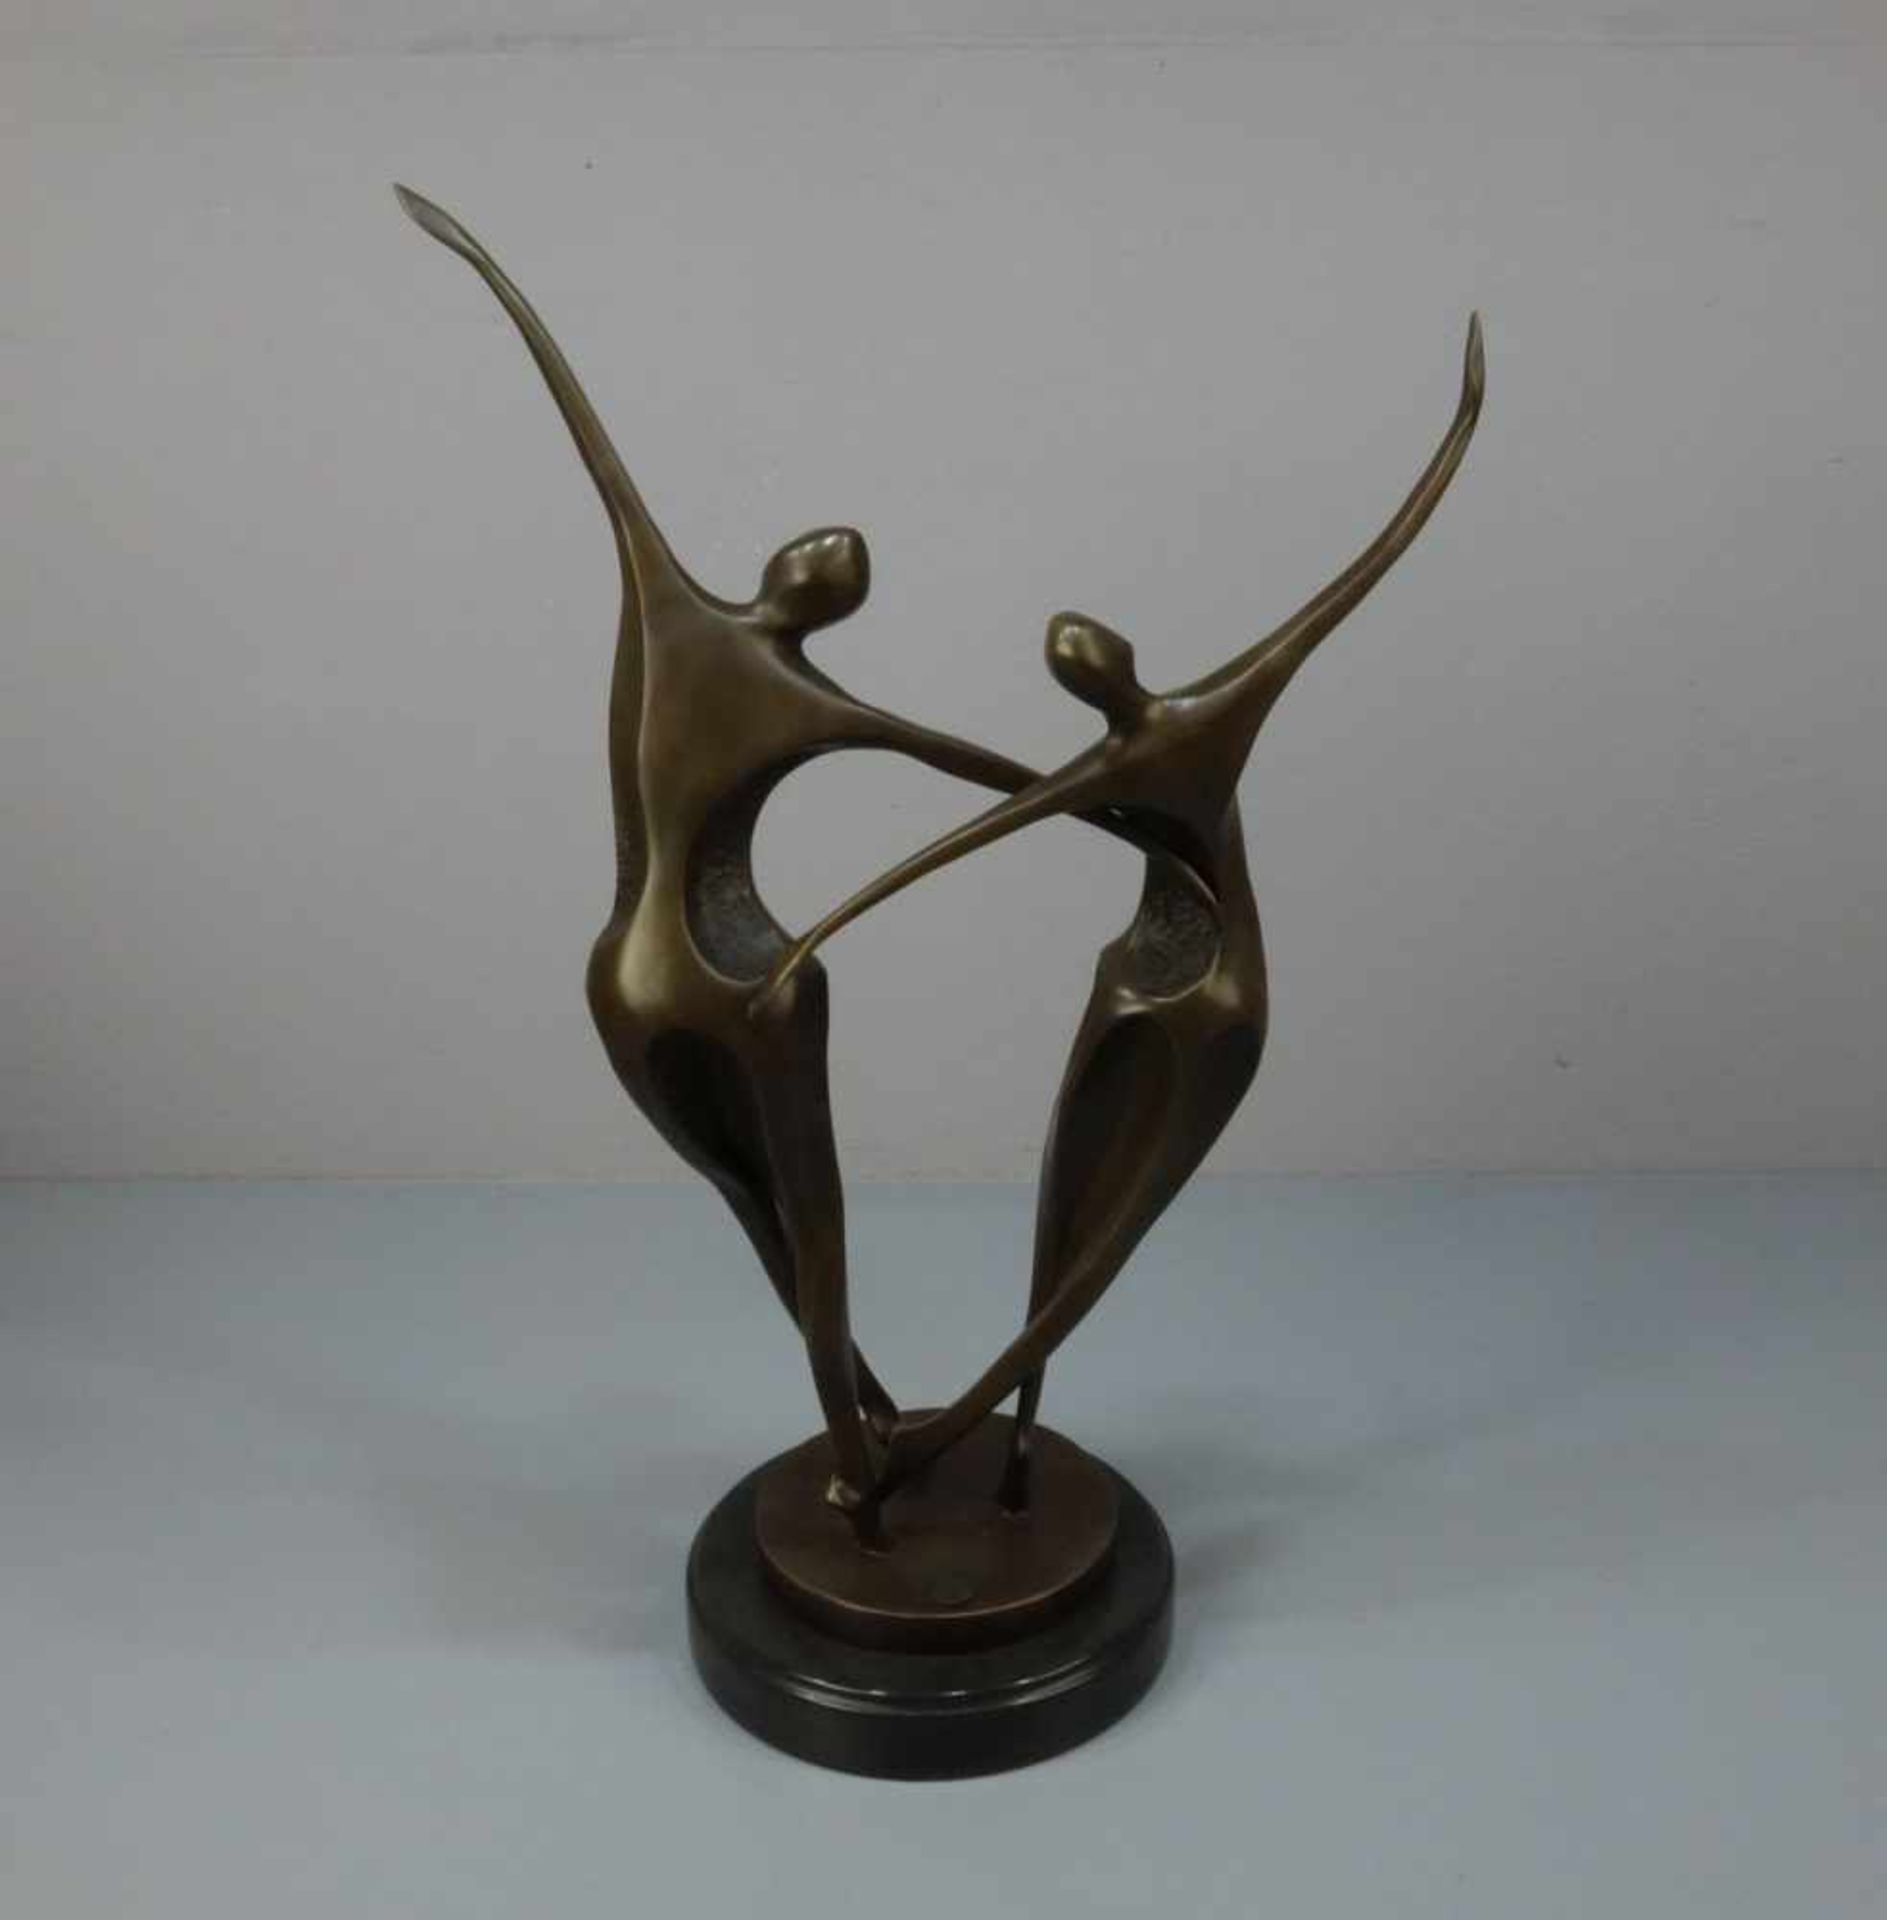 LOPEZ, MIGUEL FERNANDO (auch Milo, geb. 1955 in Lissabon), Skulptur / sculpture: "Tanzendes Paar", - Bild 3 aus 6